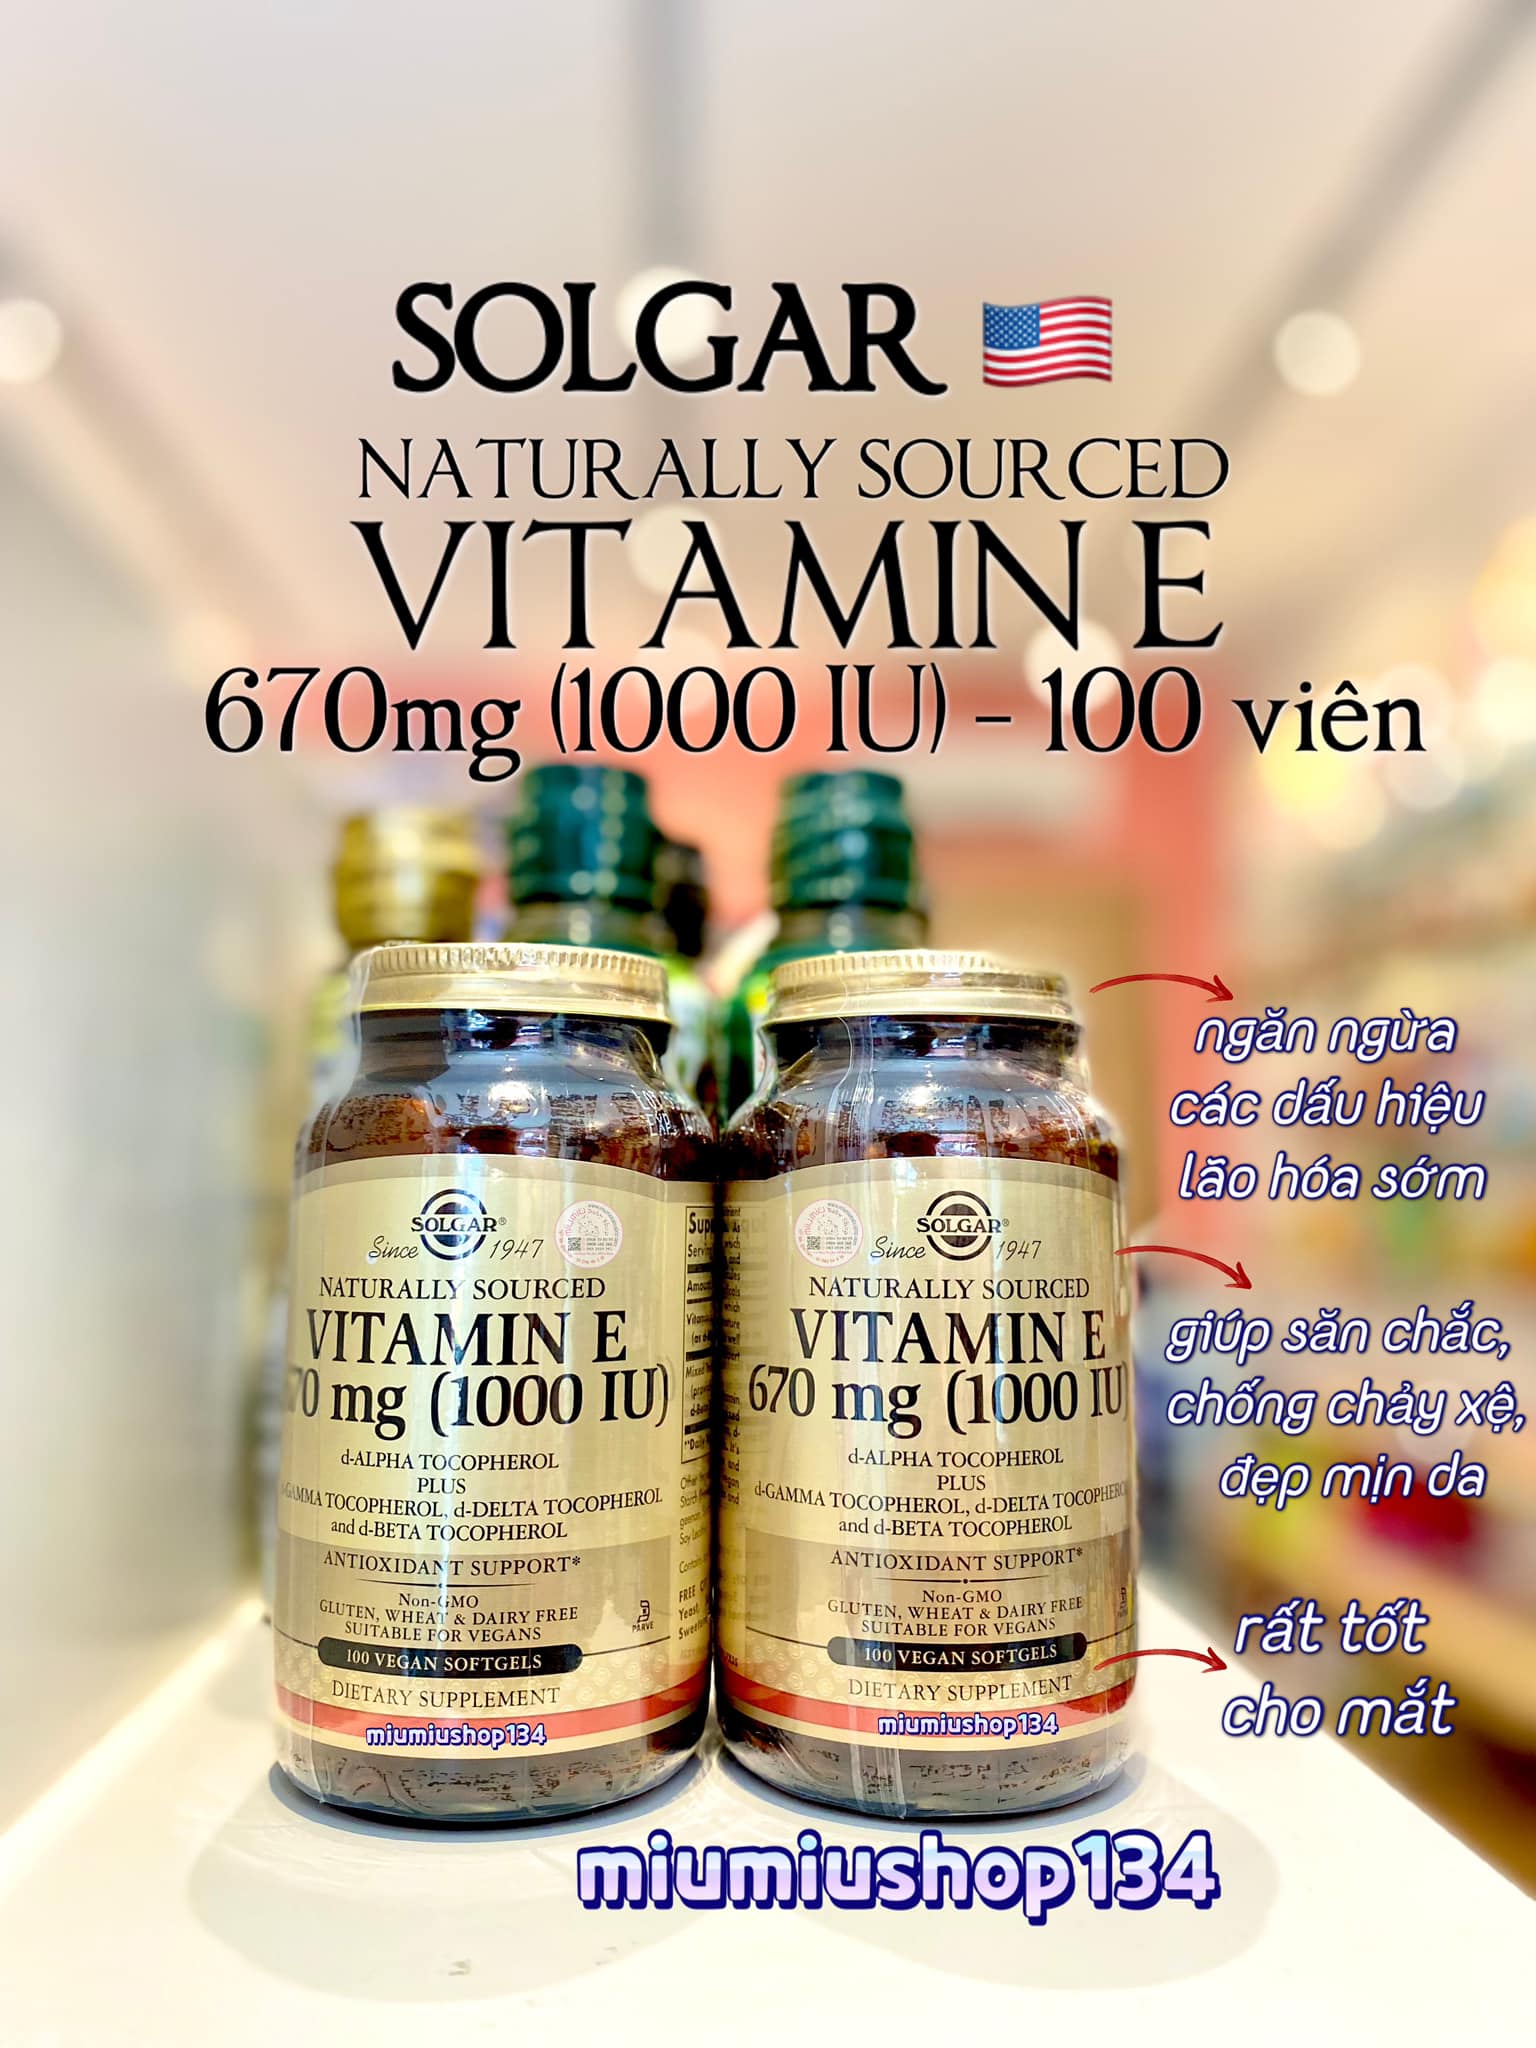 Vitamin E 1000IU có tác dụng tăng cường miễn dịch không?
